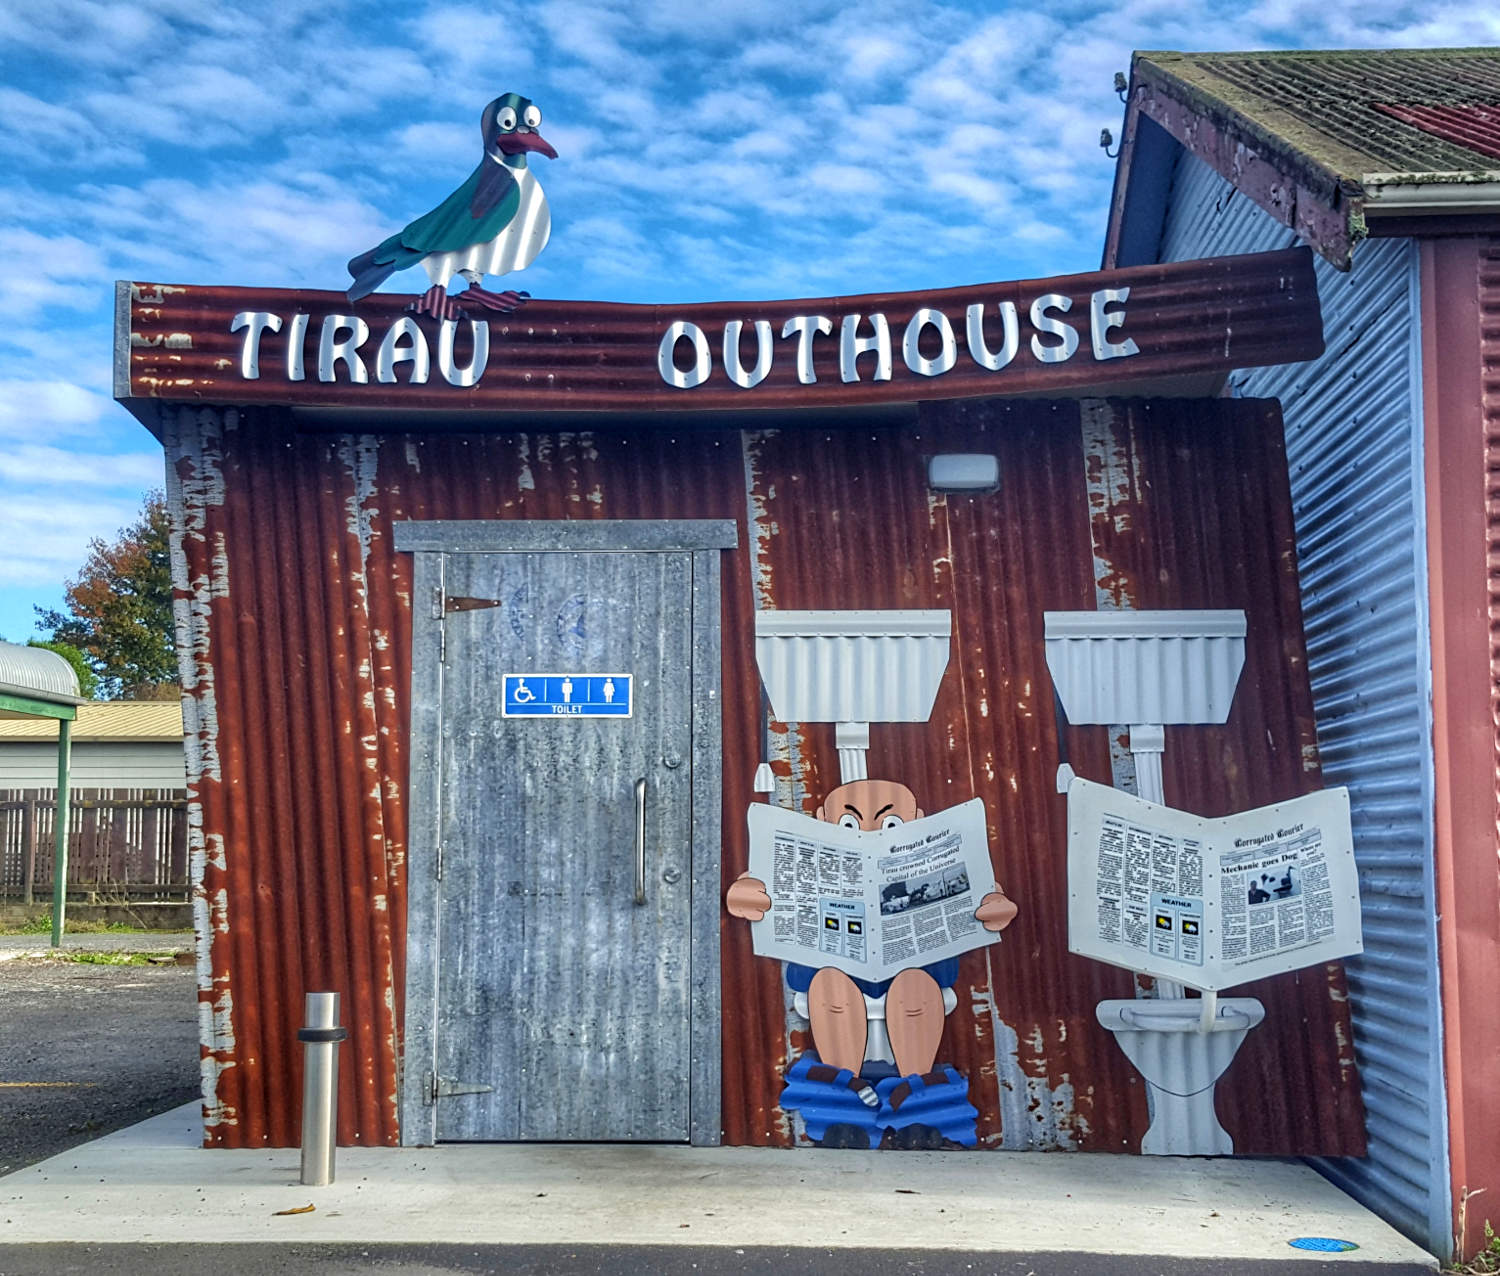 Outhouse public toilets, Tirau, New Zealand @366 photos